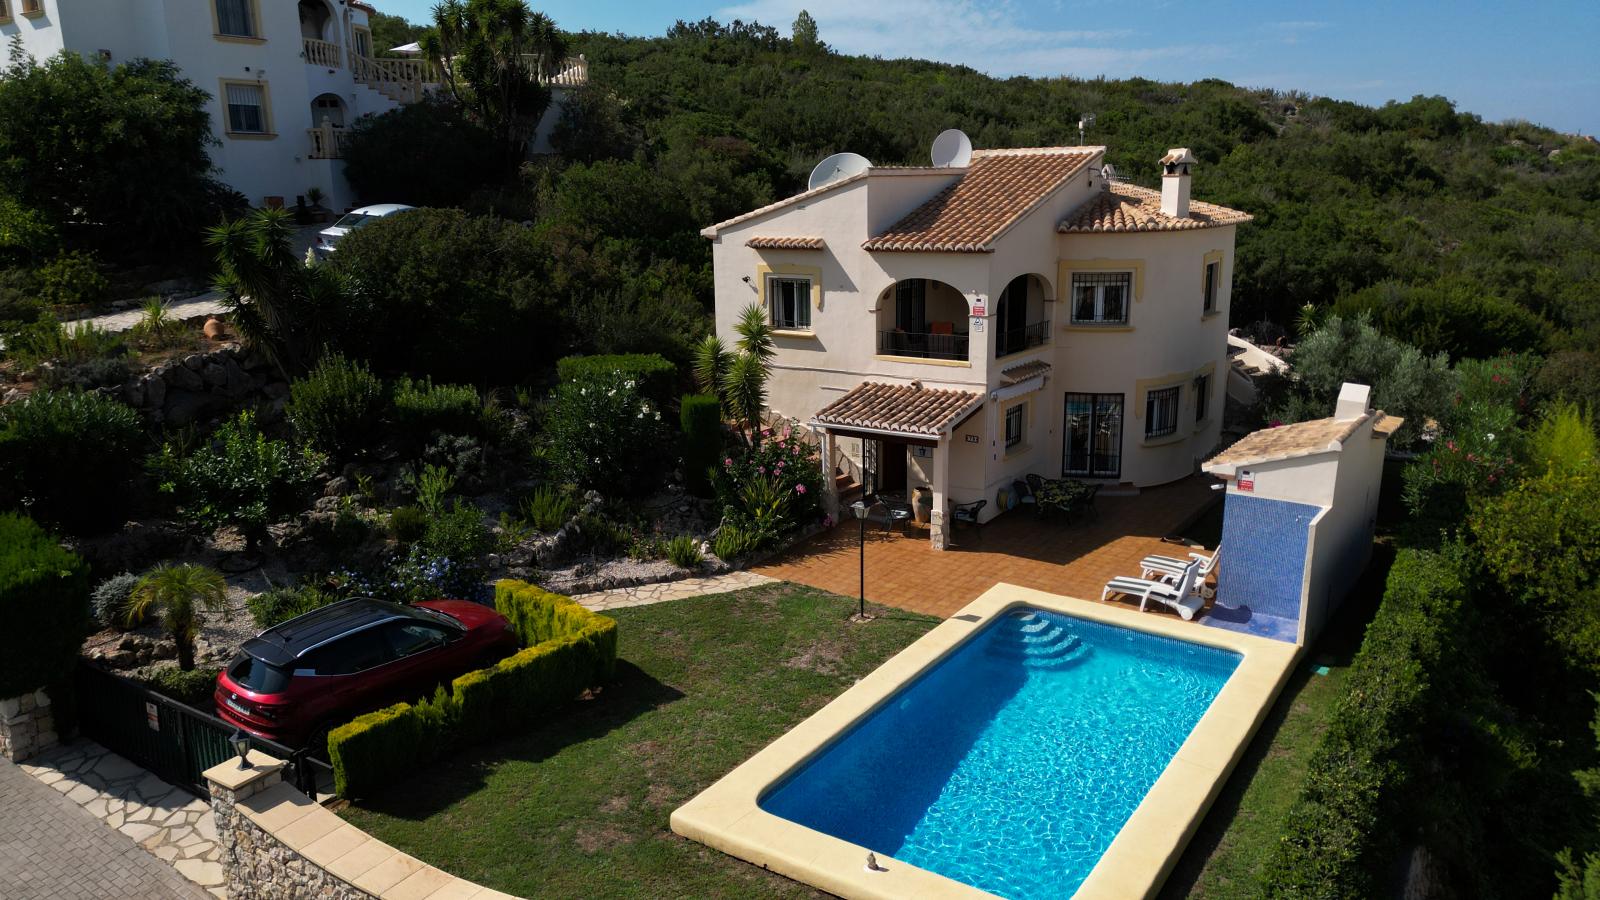 Große, mediterrane Familien- Villa mit Pool und 3 Schlafzimmern, in ruhiger Wohnlage von Rafol de Almunia